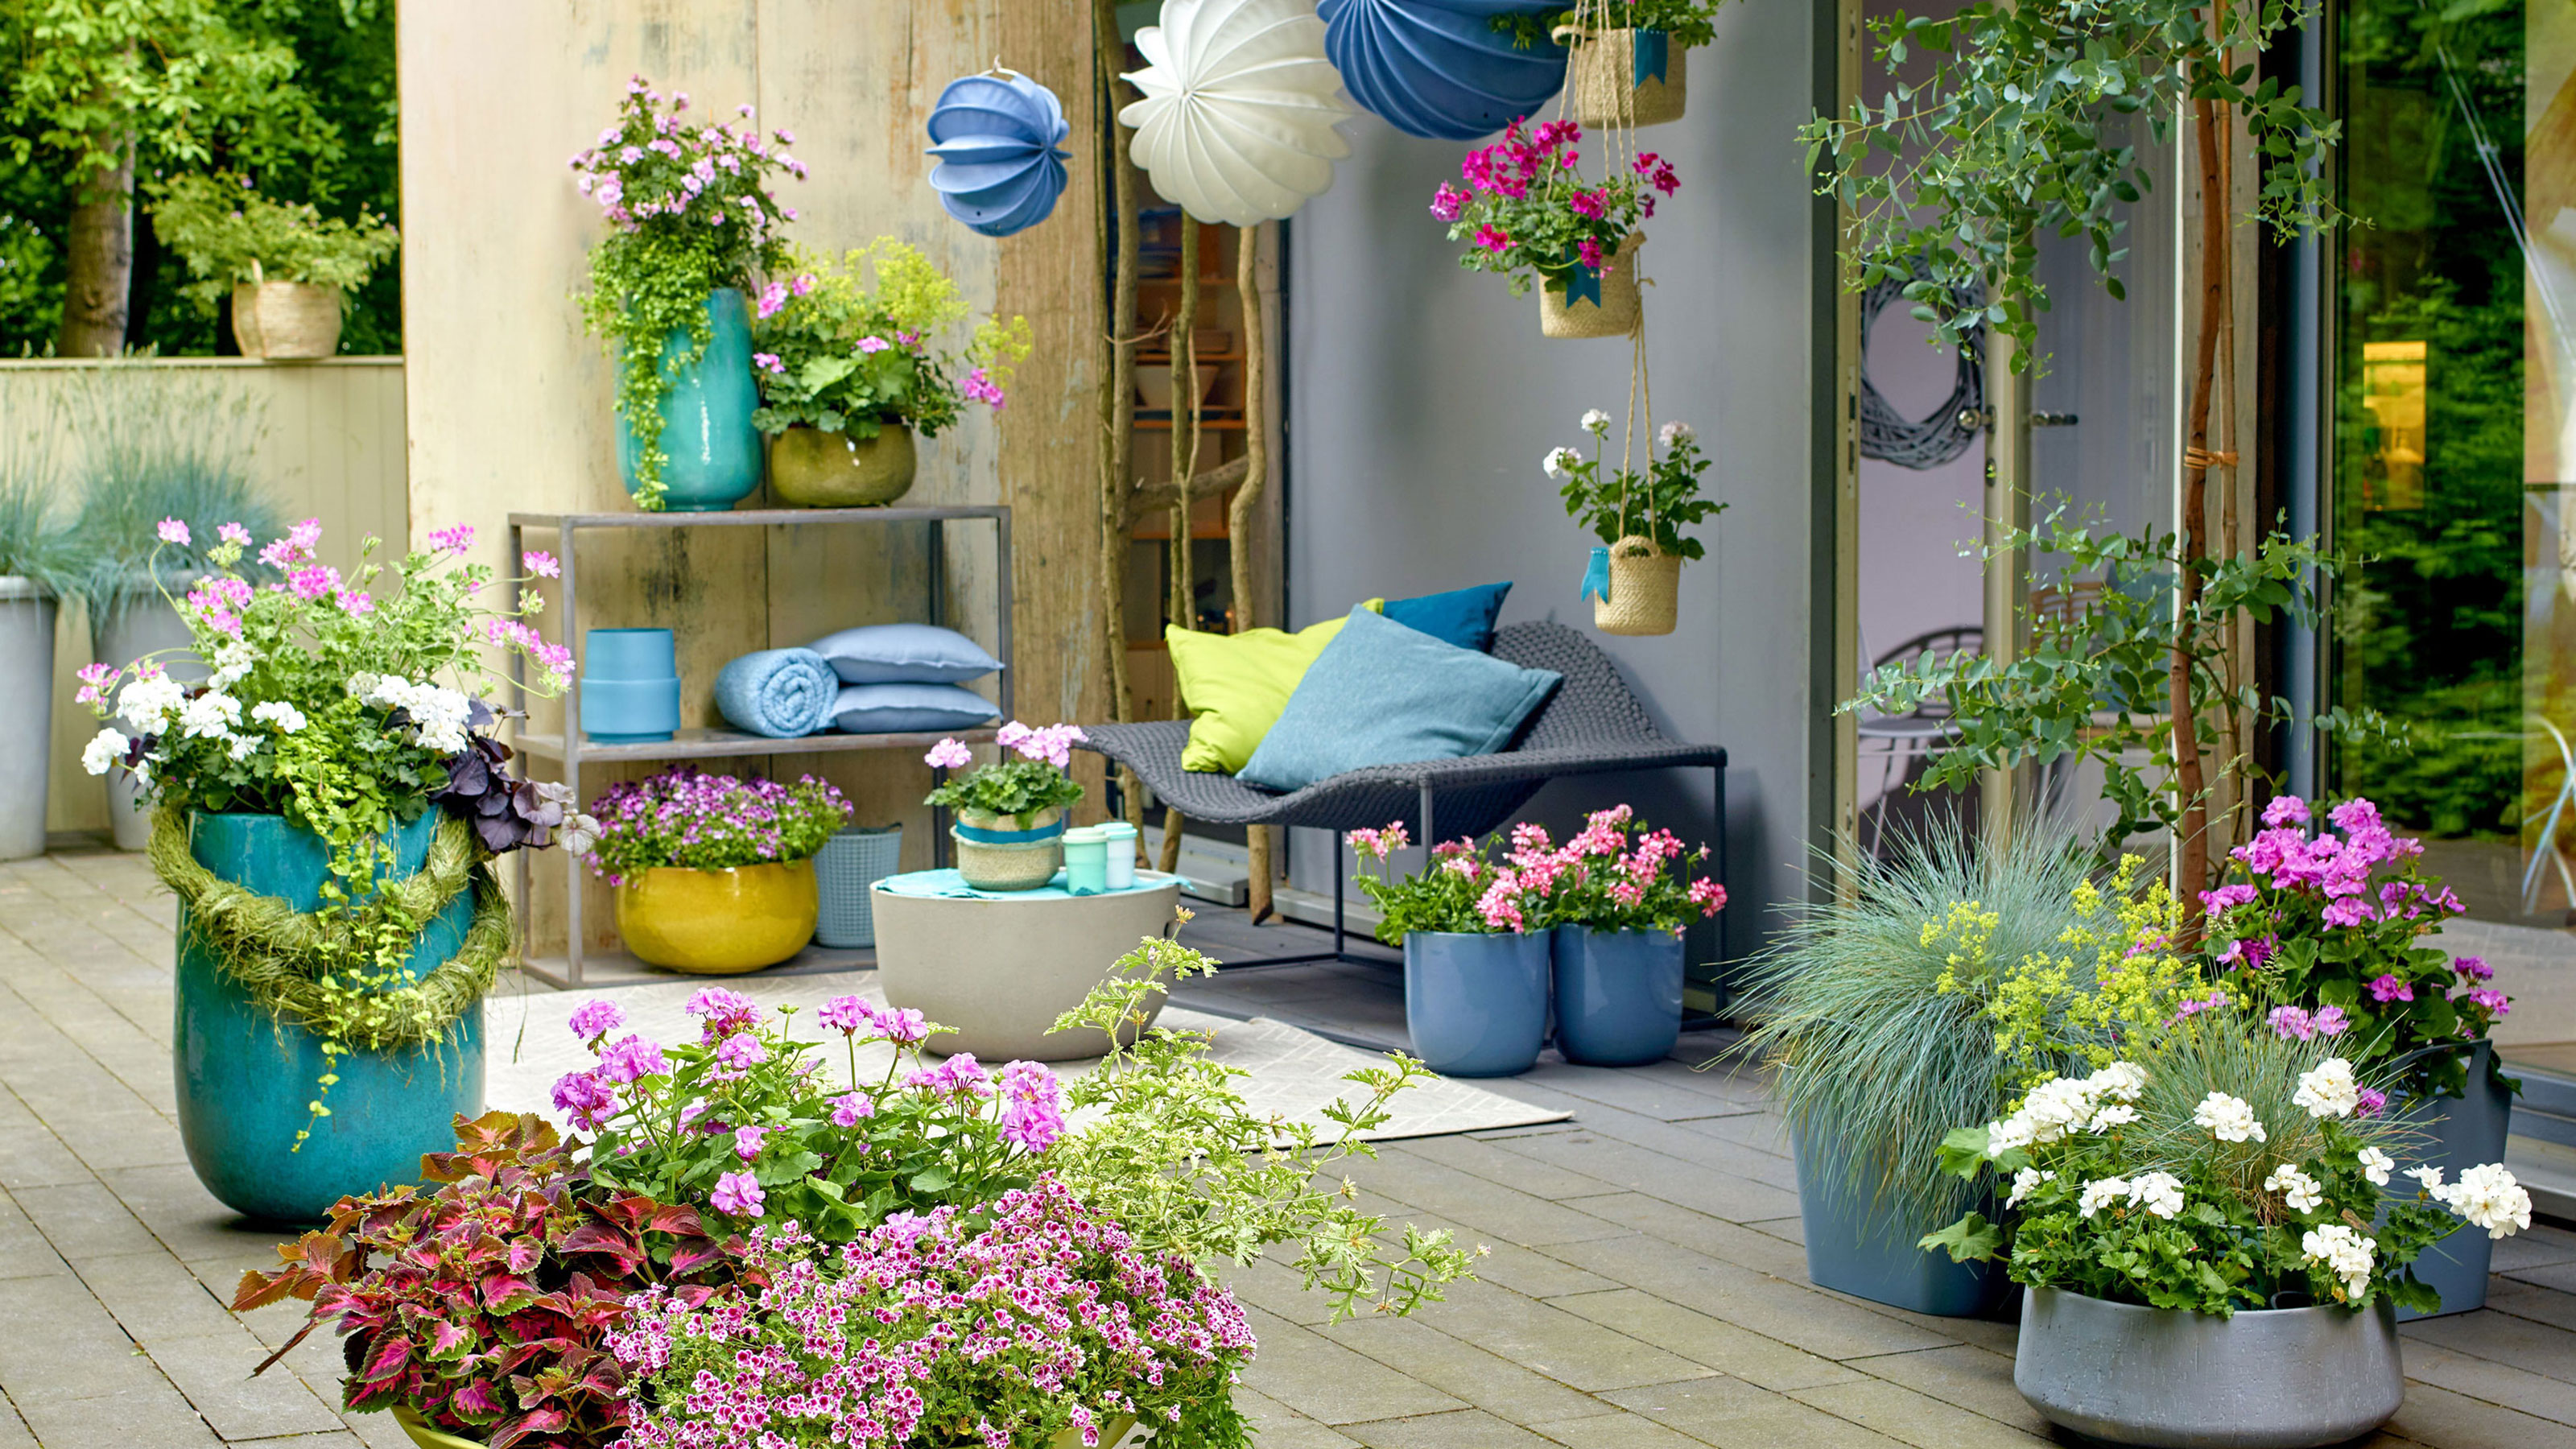 Great Decoration for gardens in summer Garden plants wooden hang bucket 